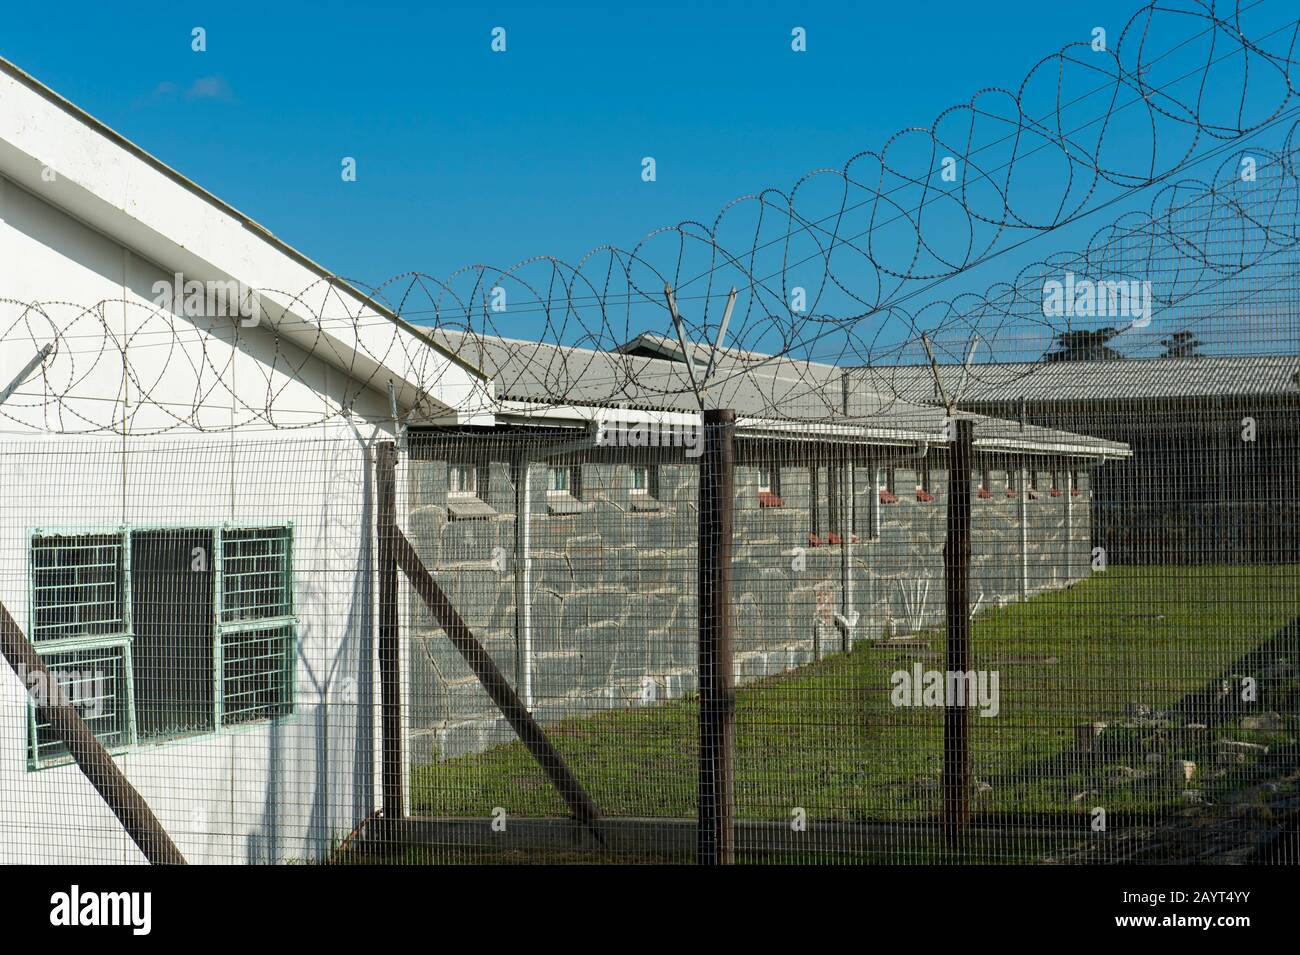 Las instalaciones de la prisión en la isla Robben, que es una isla en la bahía de Table, 6.9 km al oeste de la costa de Cabo, Sudáfrica, y se ha utilizado para la iso Foto de stock